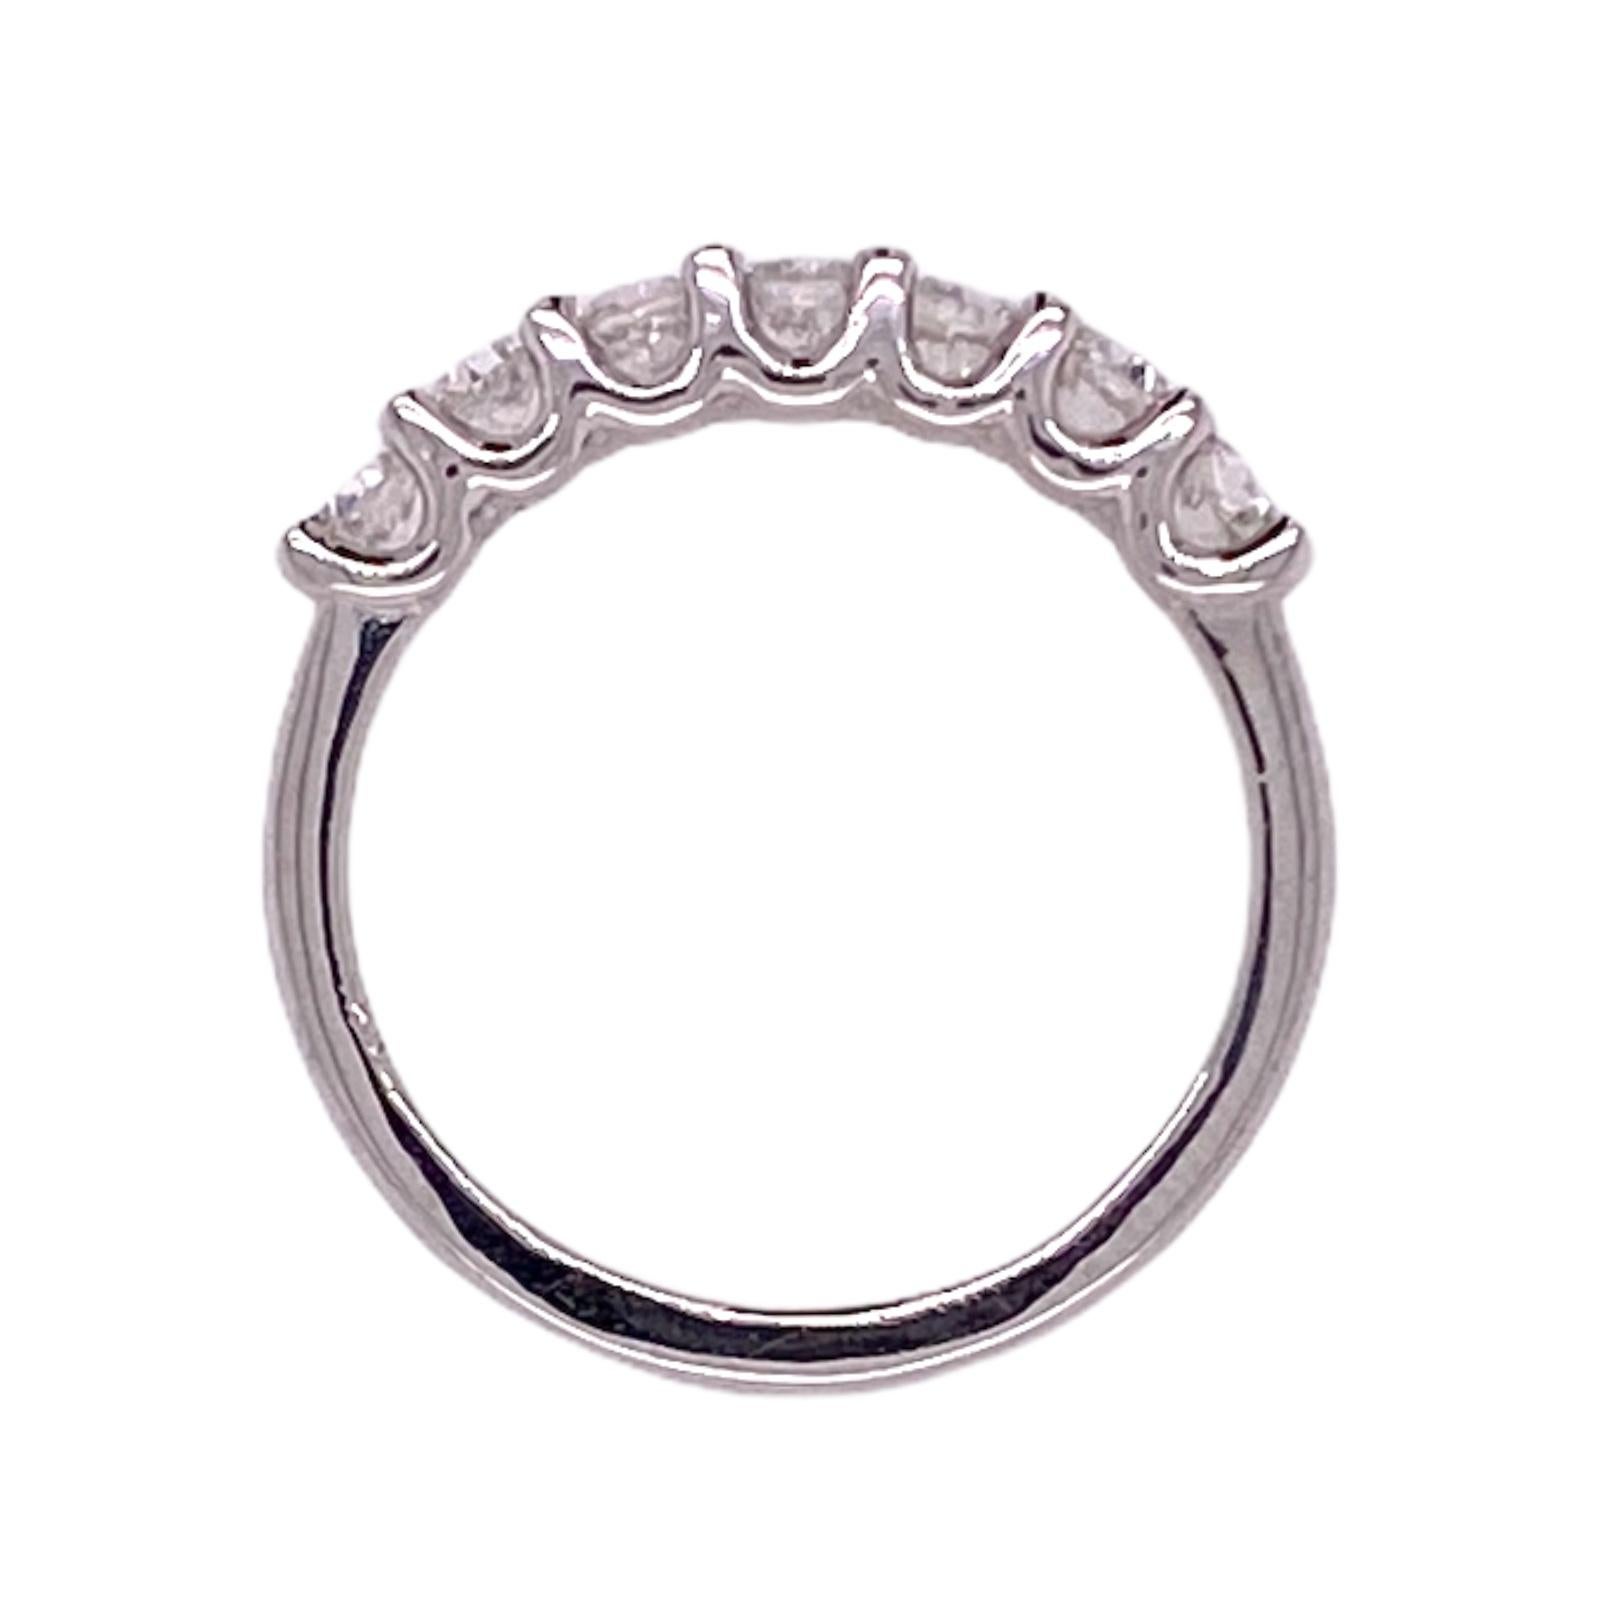 Modern Old European Cut Diamond Wedding Band Ring 18 Karat White Gold U Prong For Sale